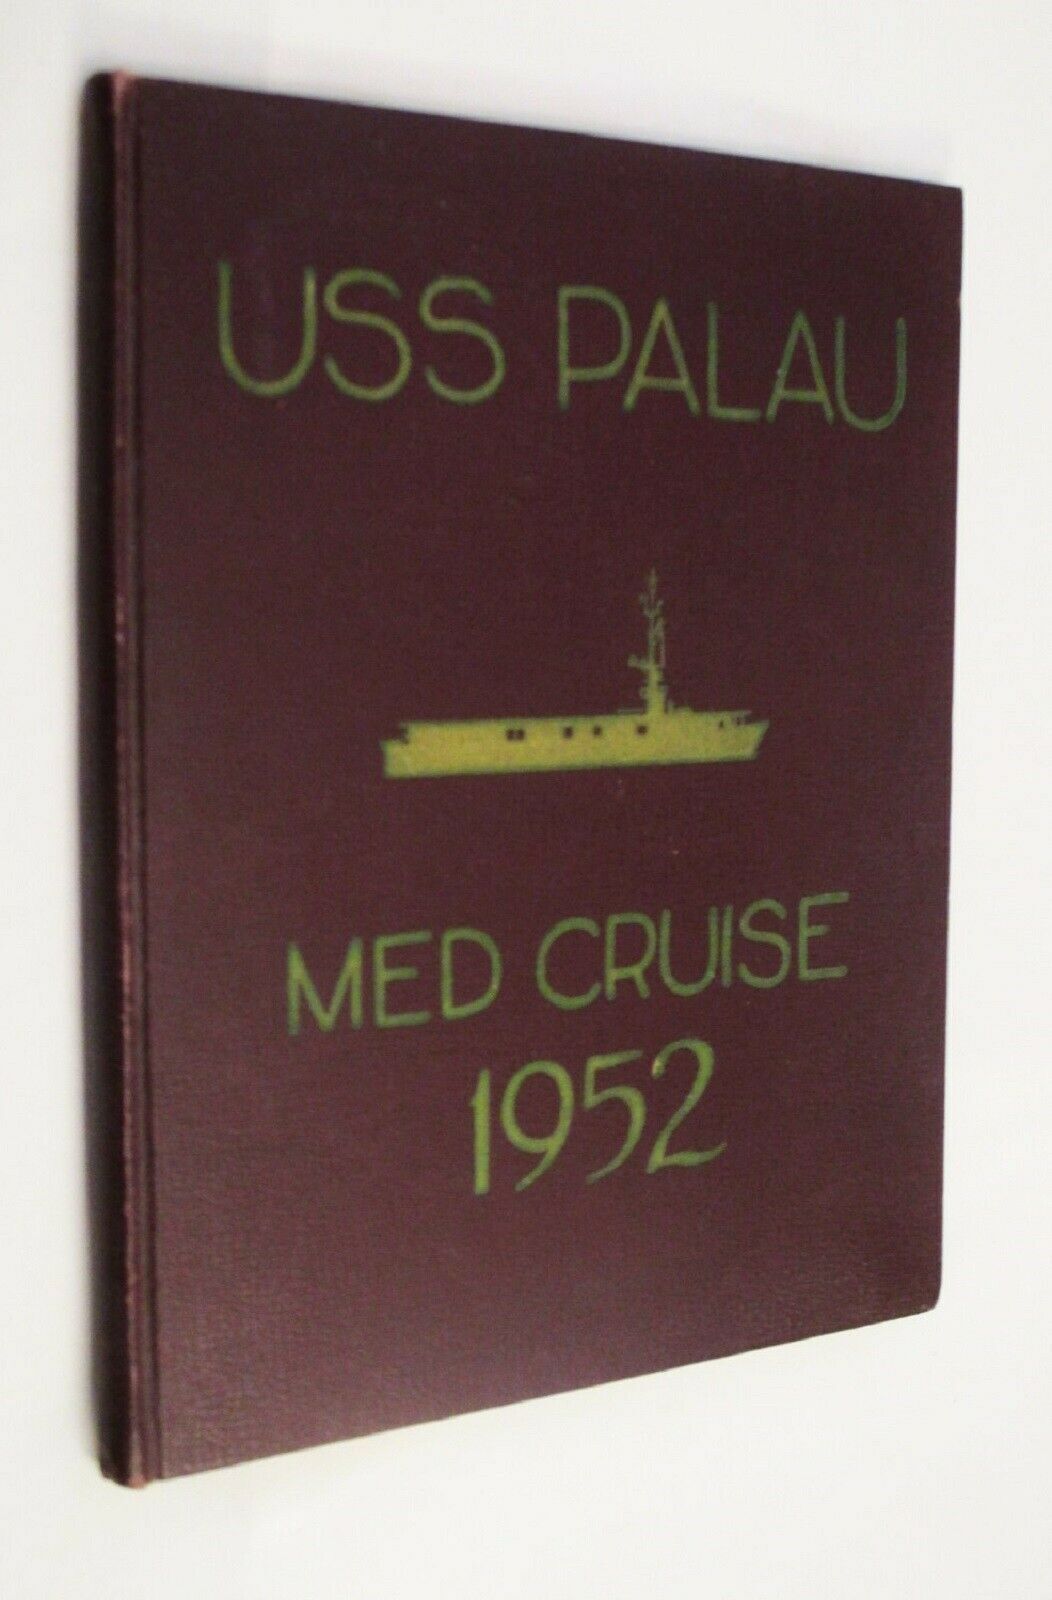 USS Palau CVE-122 1952 Mediterranean Cruise Book Deployment Navy History Photos